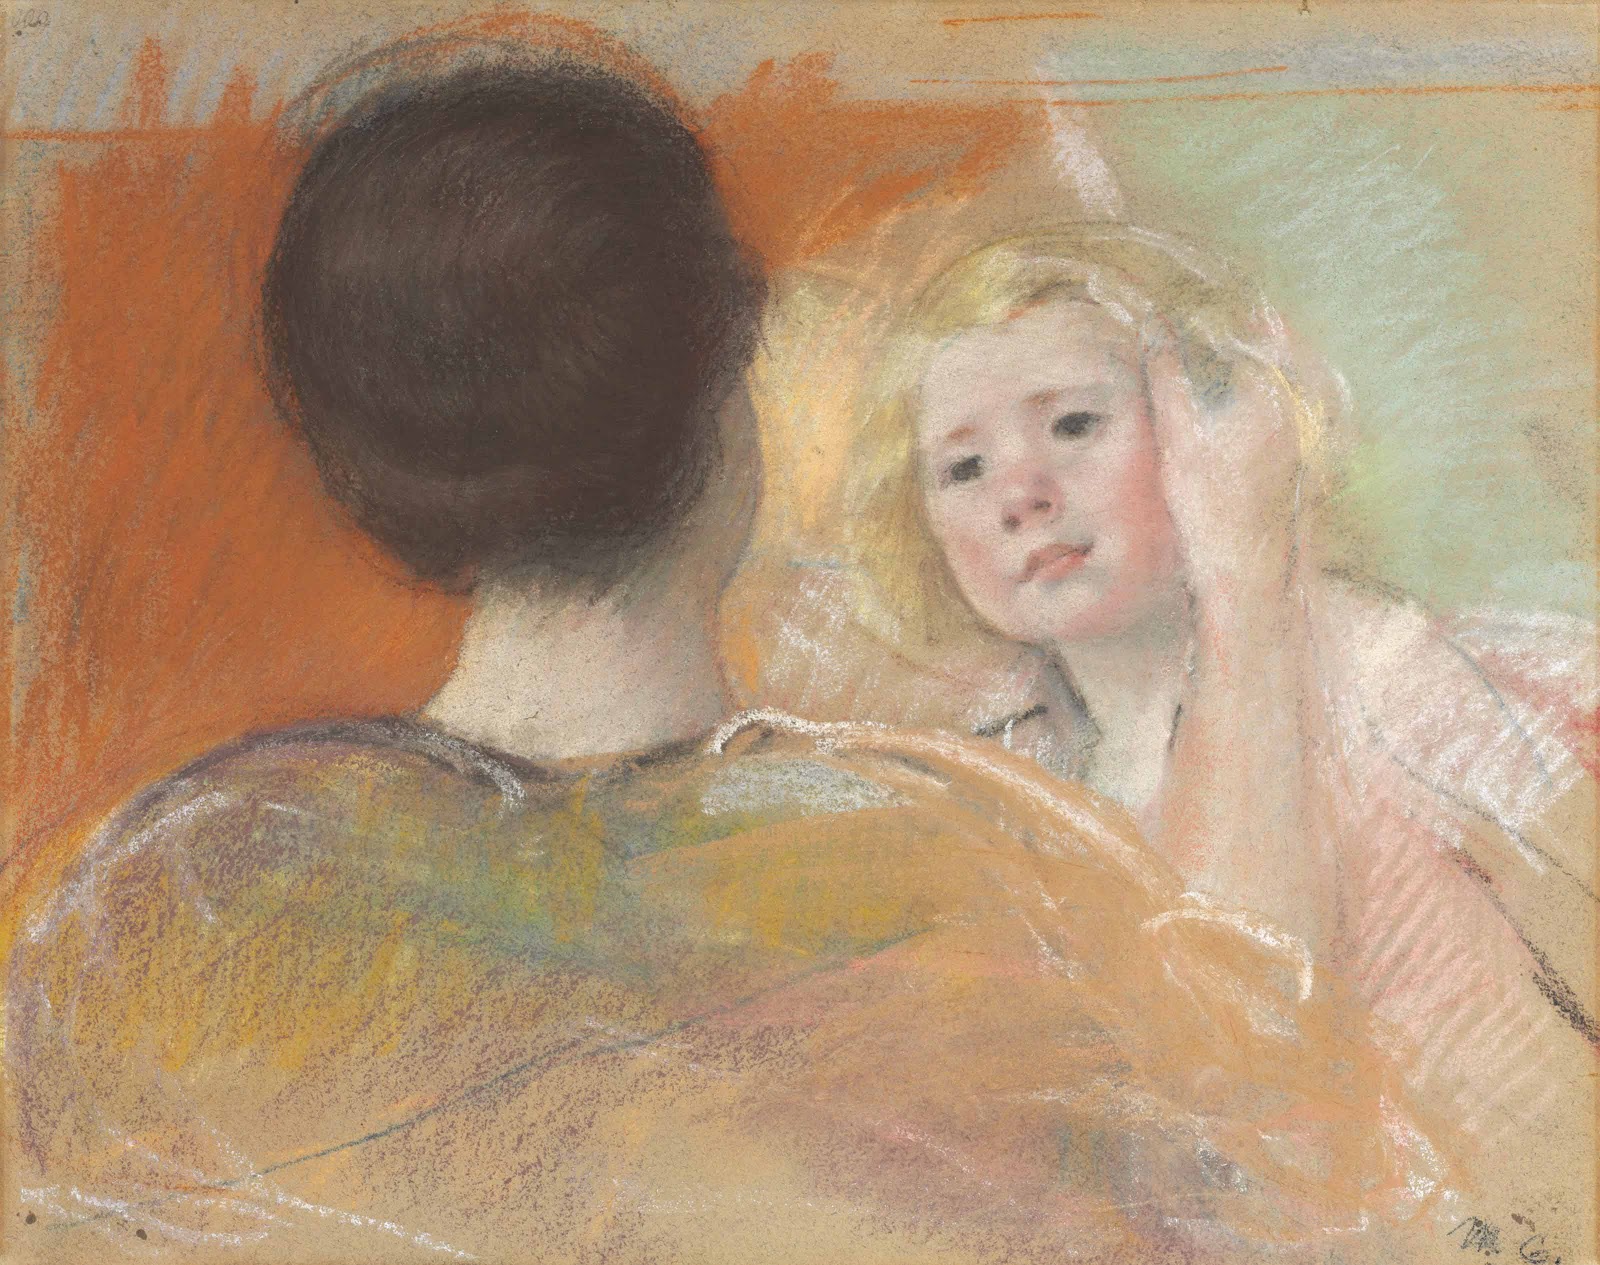 Mary+Cassatt-1844-1926 (206).jpg